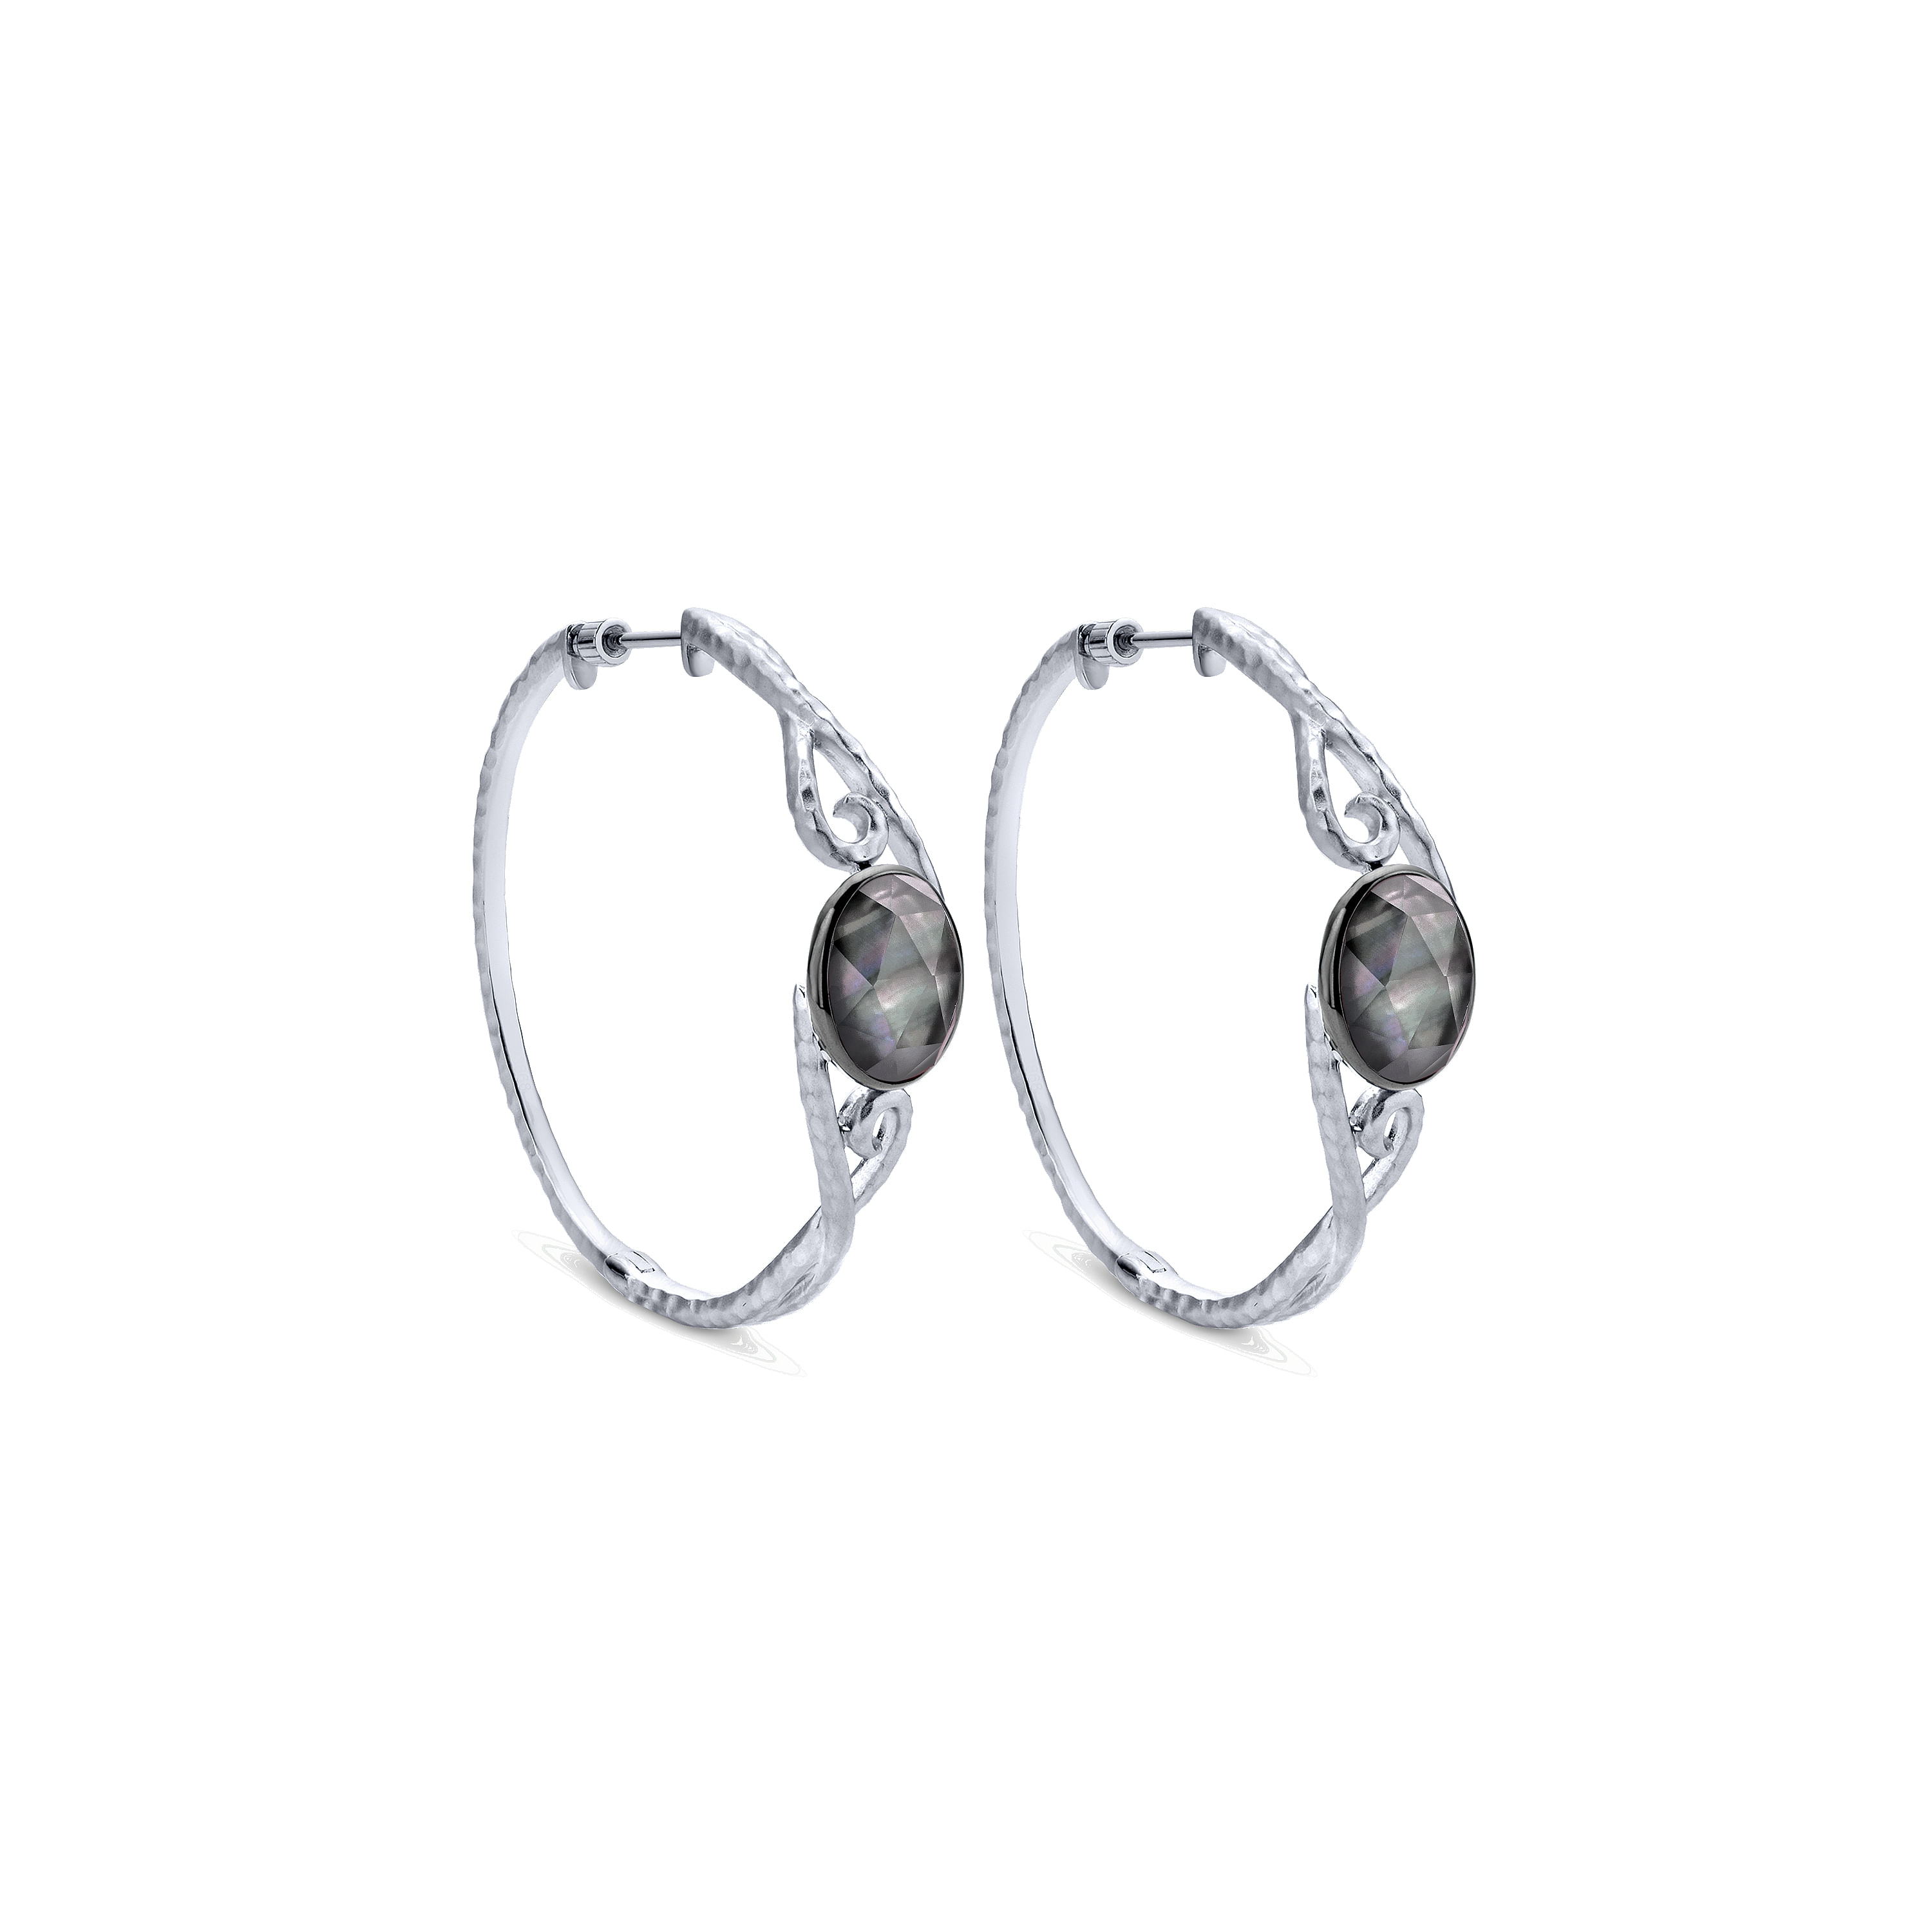 Silver 40mm Fashion Earrings